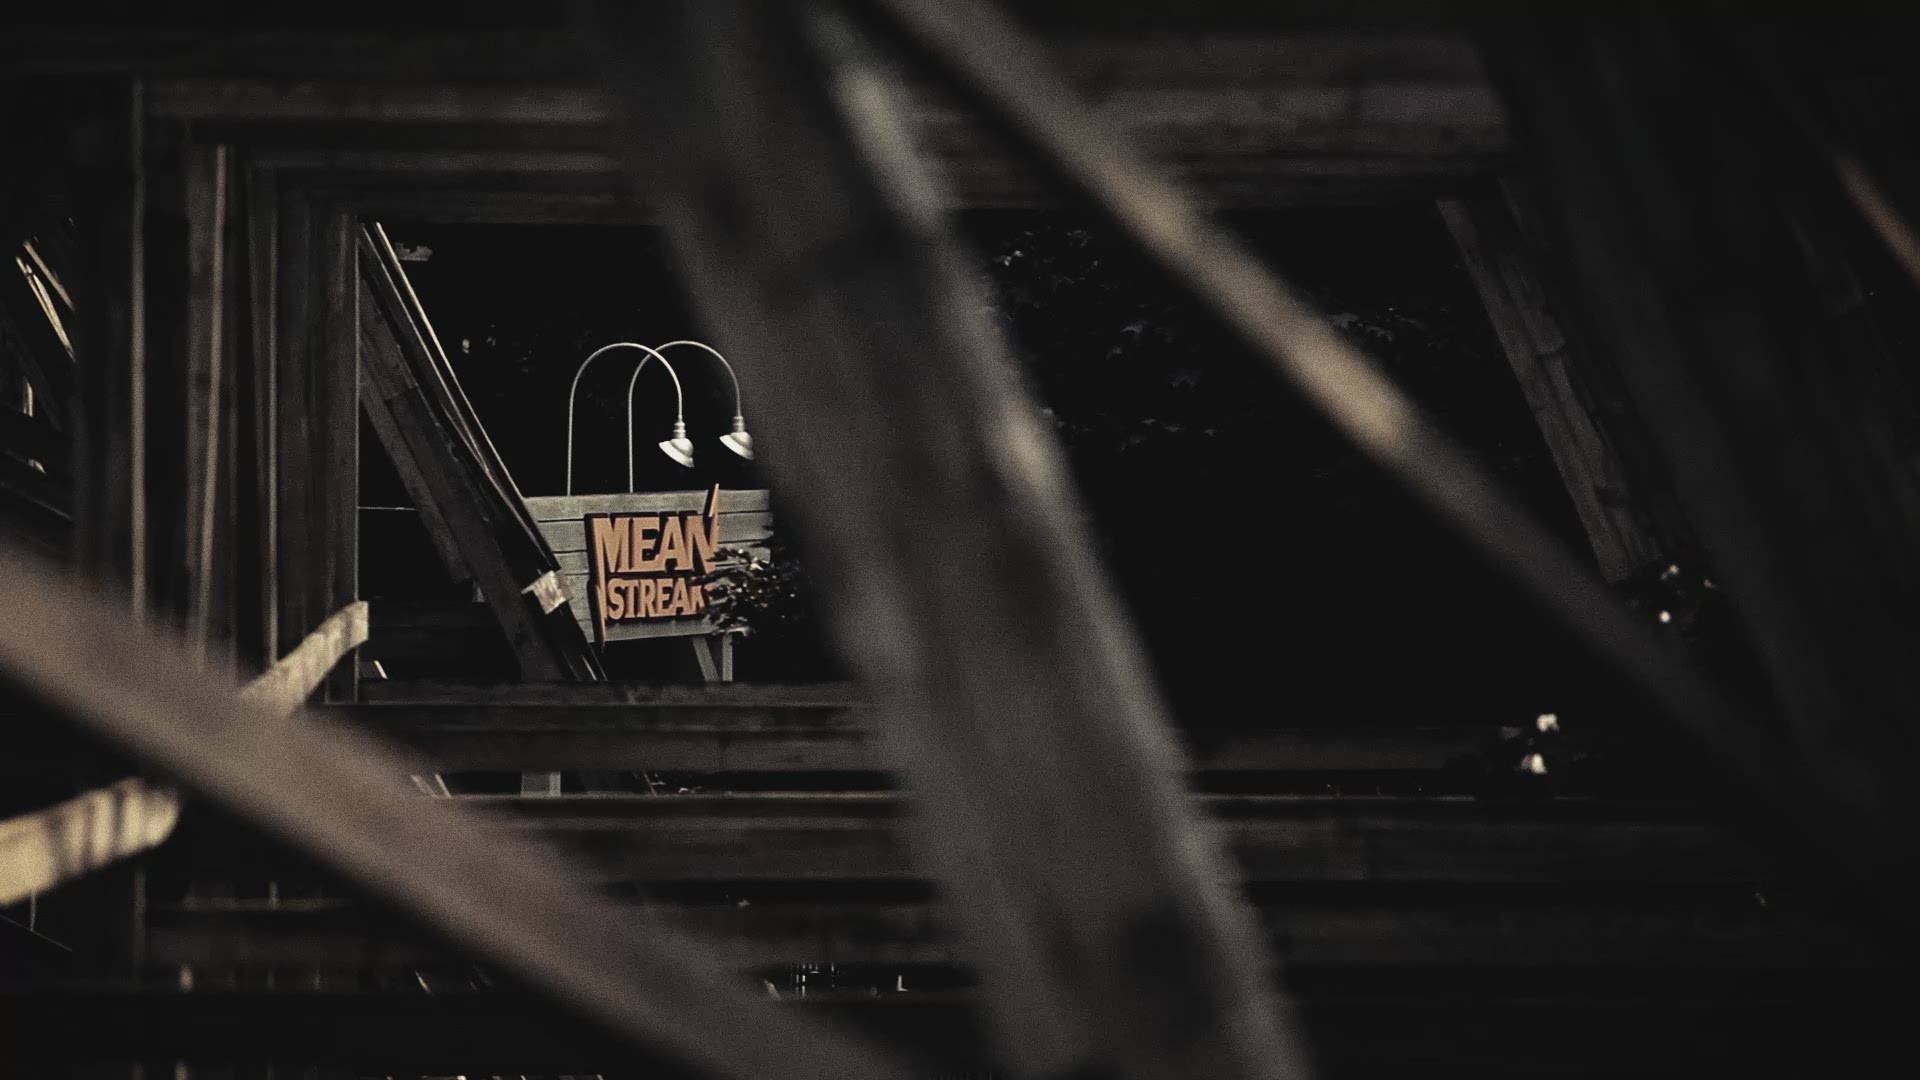 2016 marks the last season for Mean Streak as Cedar Point gives it 'the axe.'